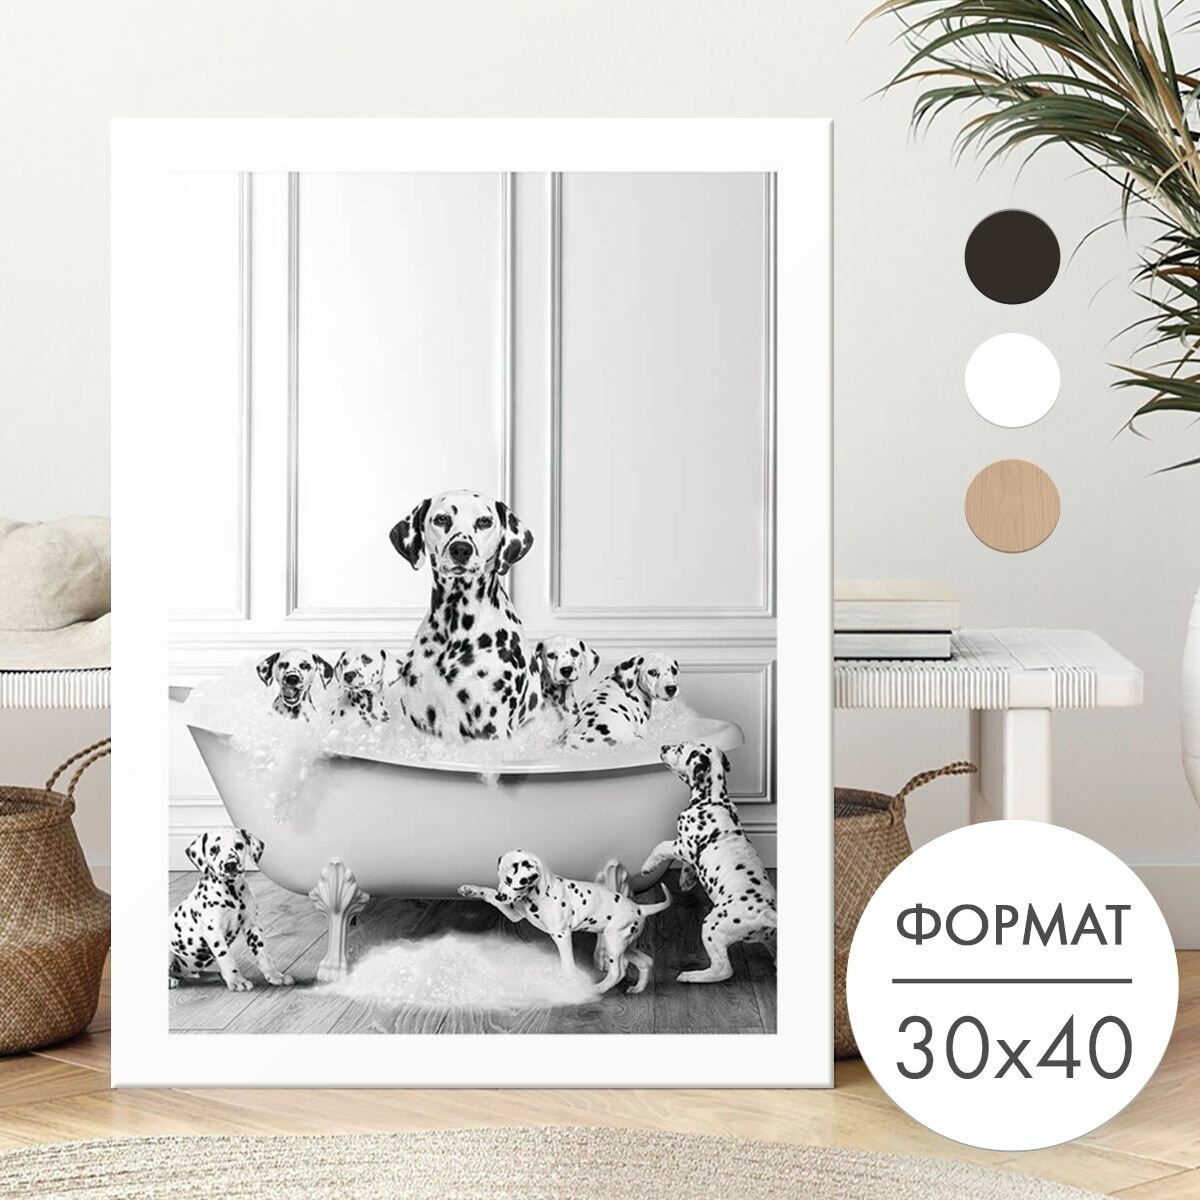 Постер 30х40 без рамки "Собака далматинец в ванной" для интерьера